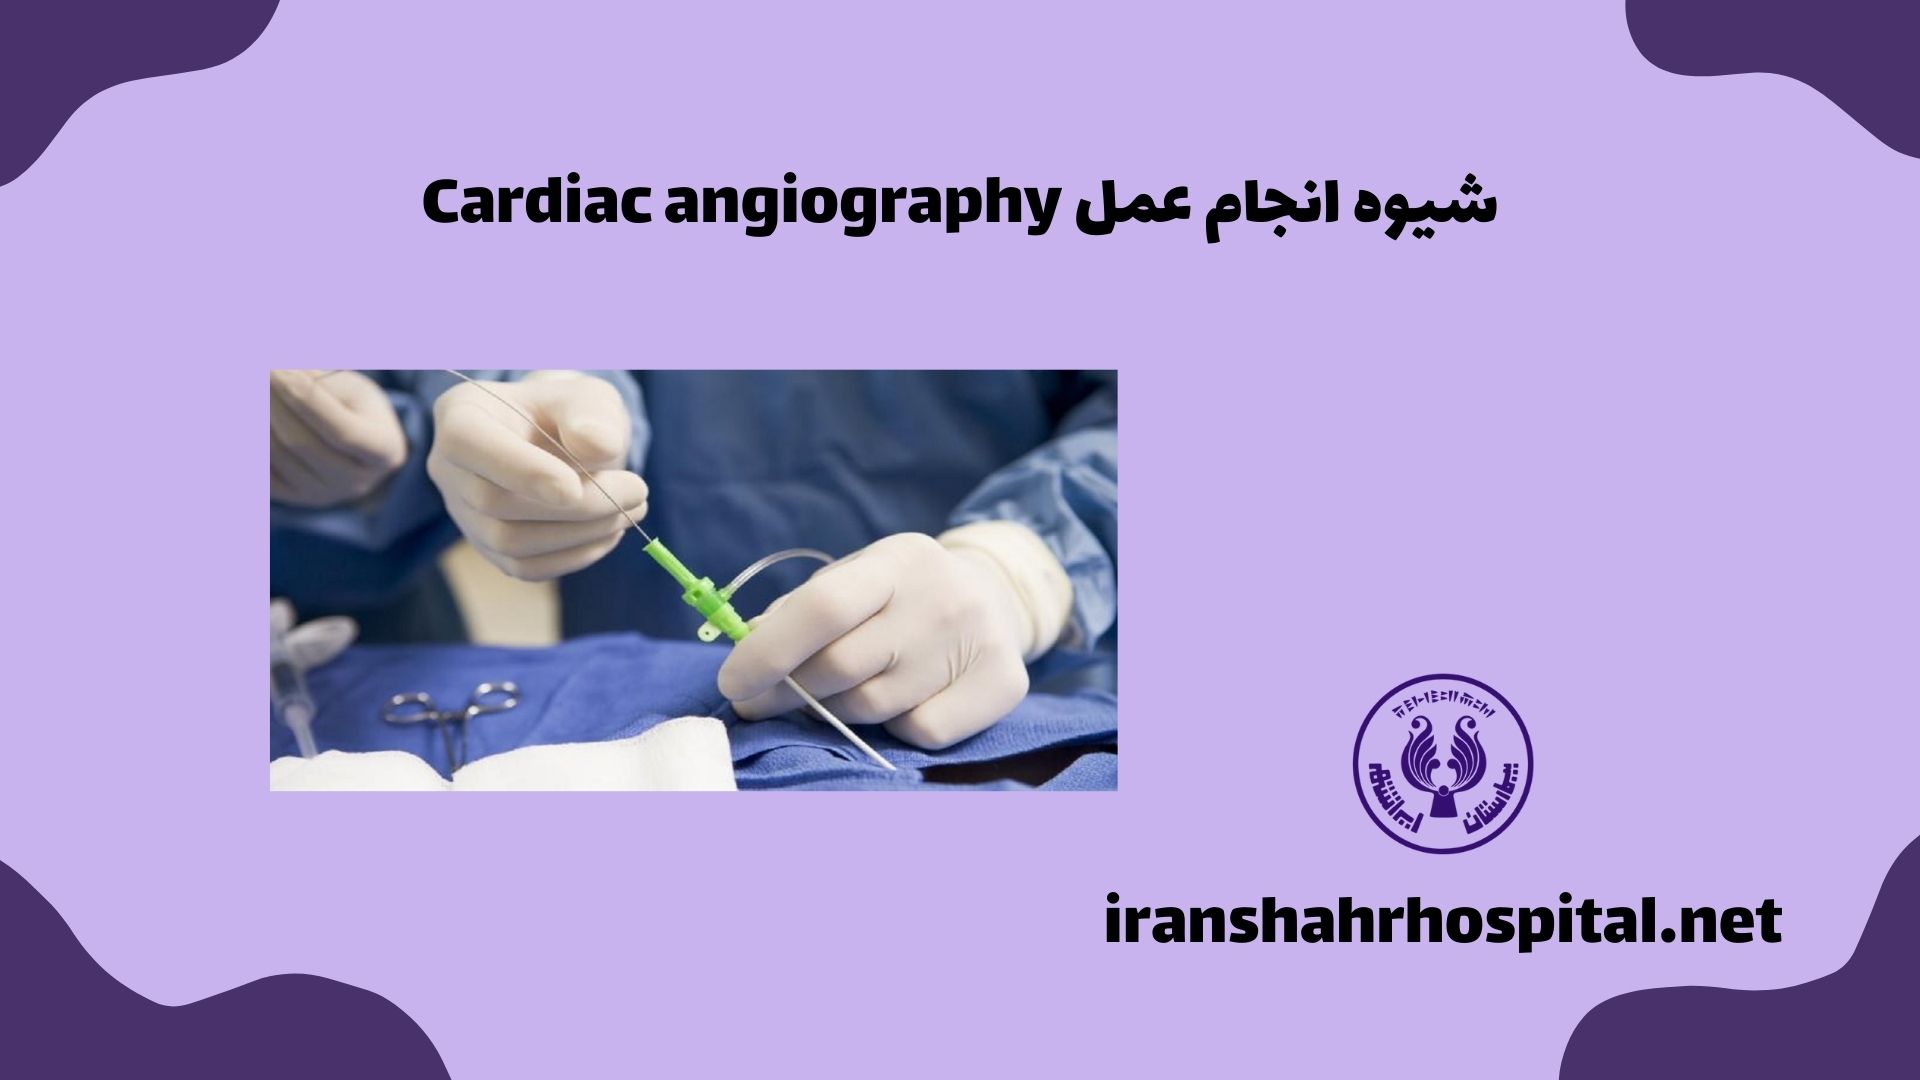 شیوه انجام عمل Cardiac angiography